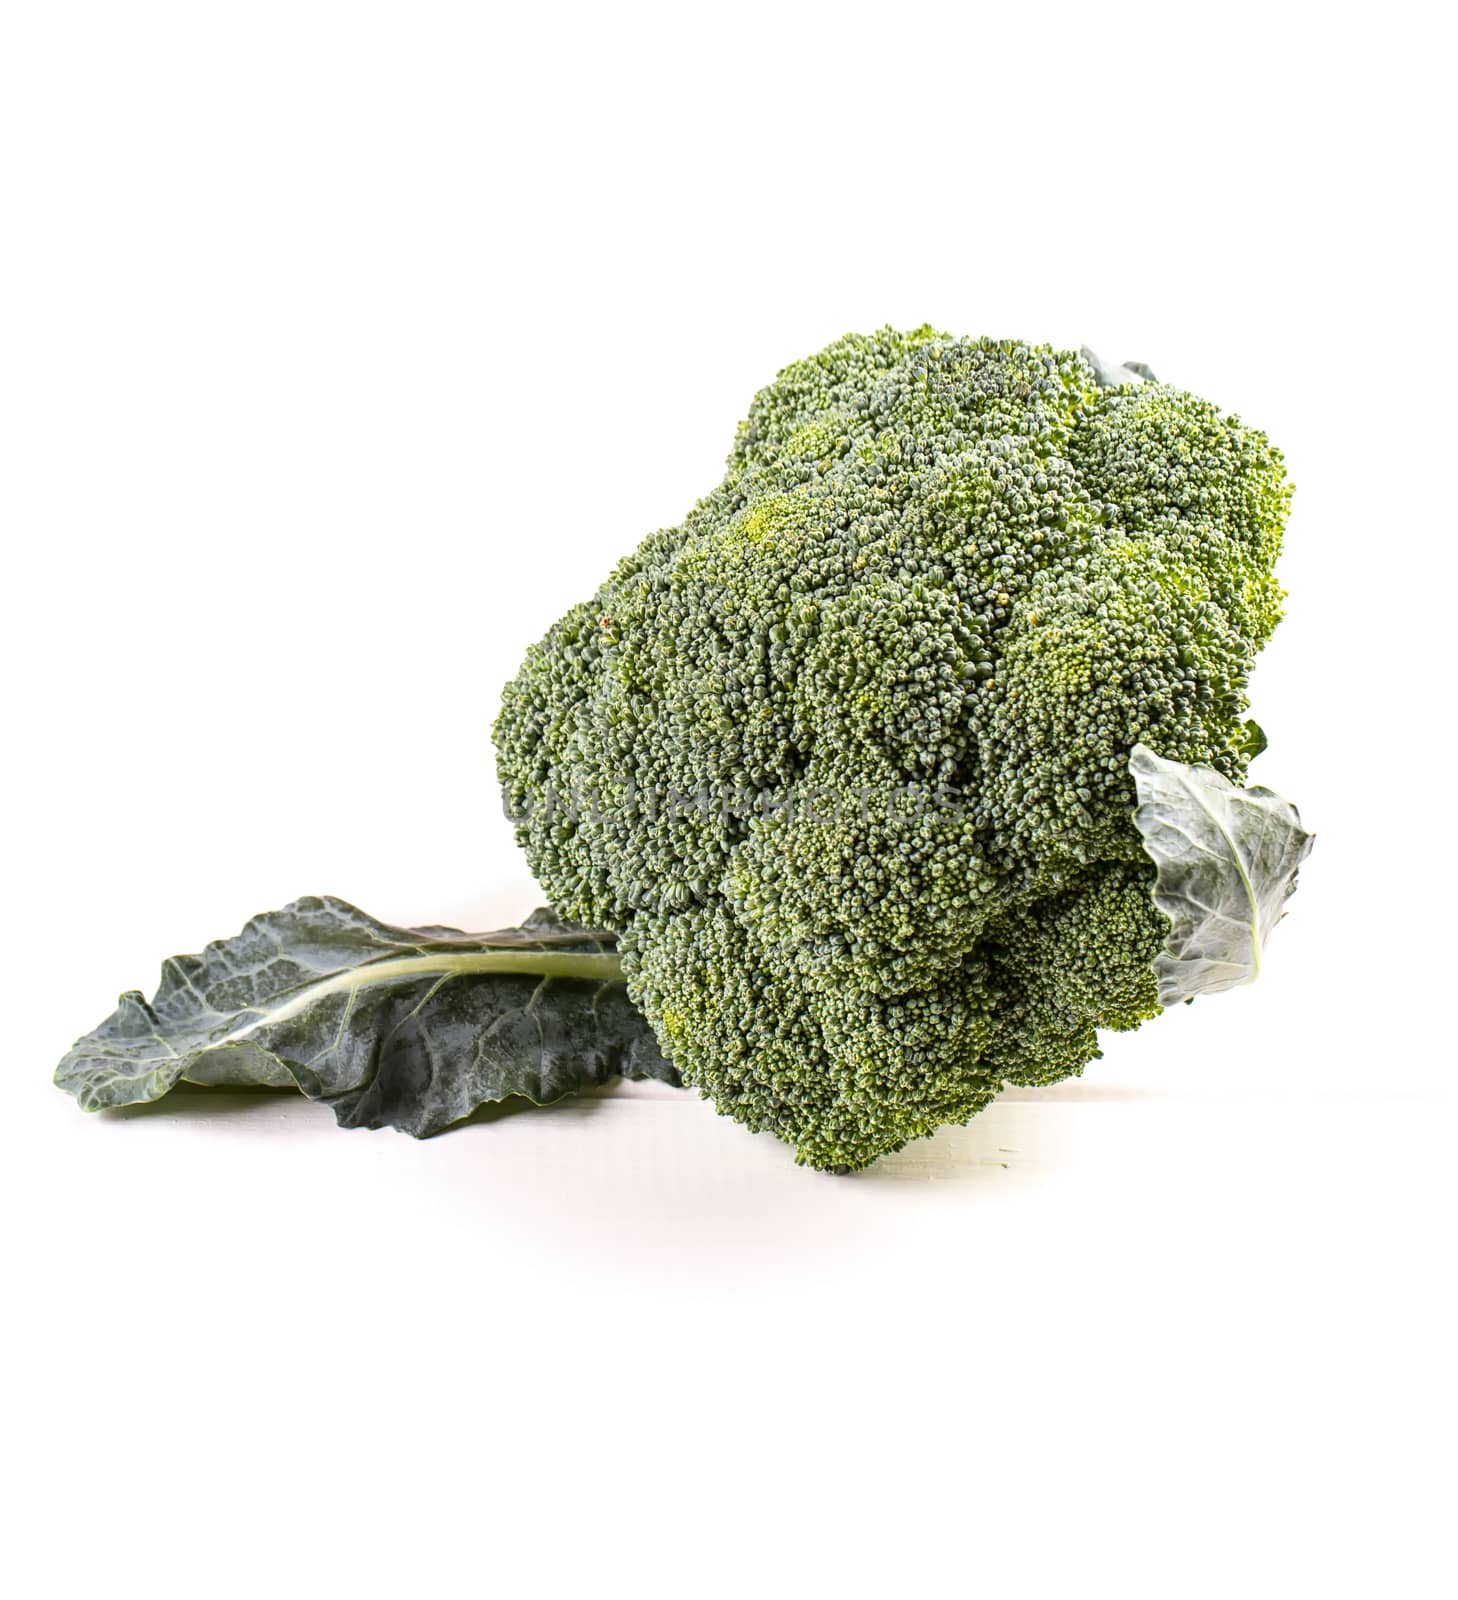 a Fresh broccoli by victosha